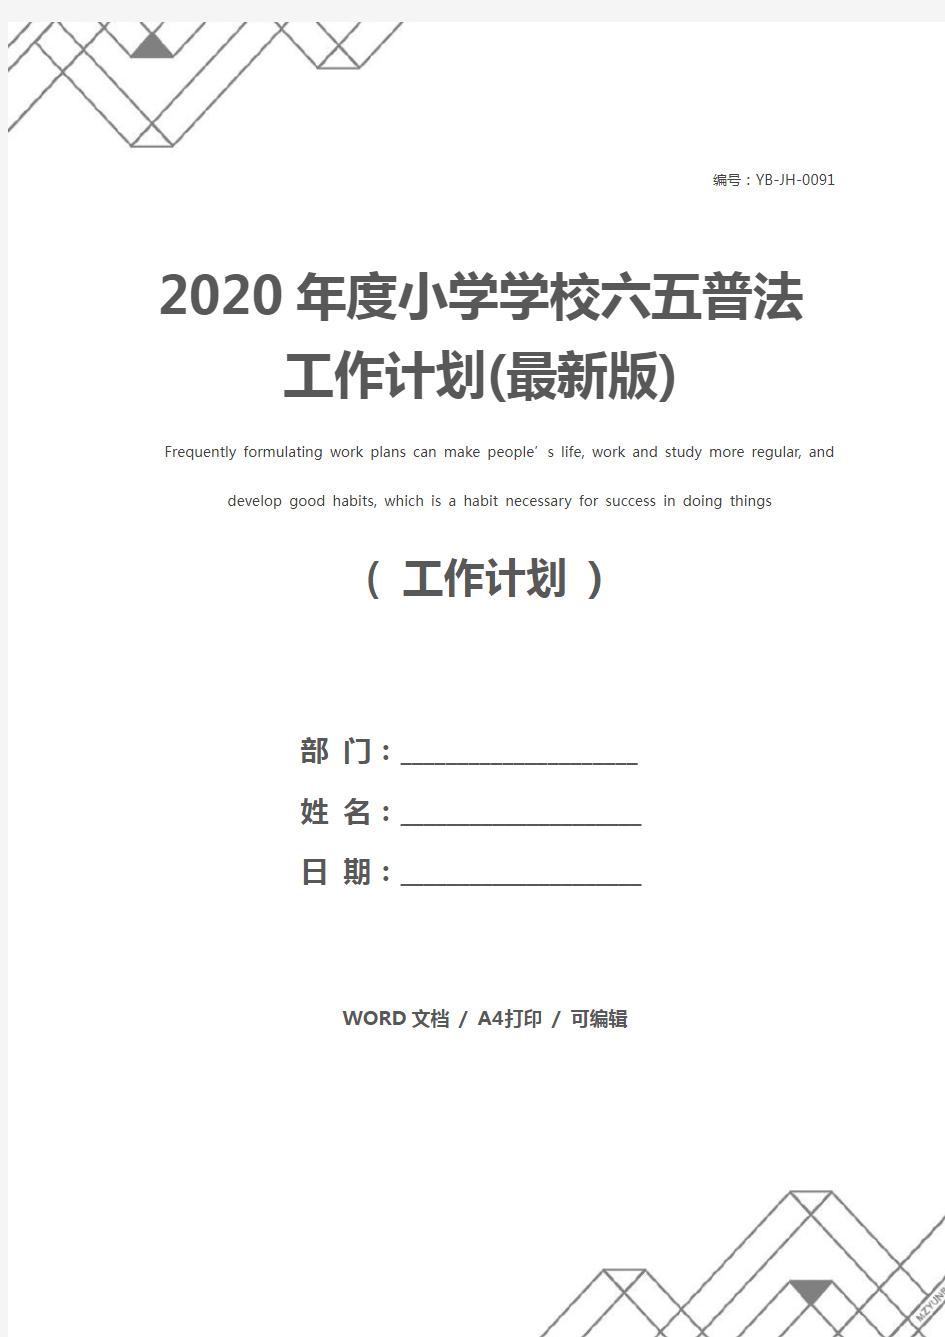 2020年度小学学校六五普法工作计划(最新版)